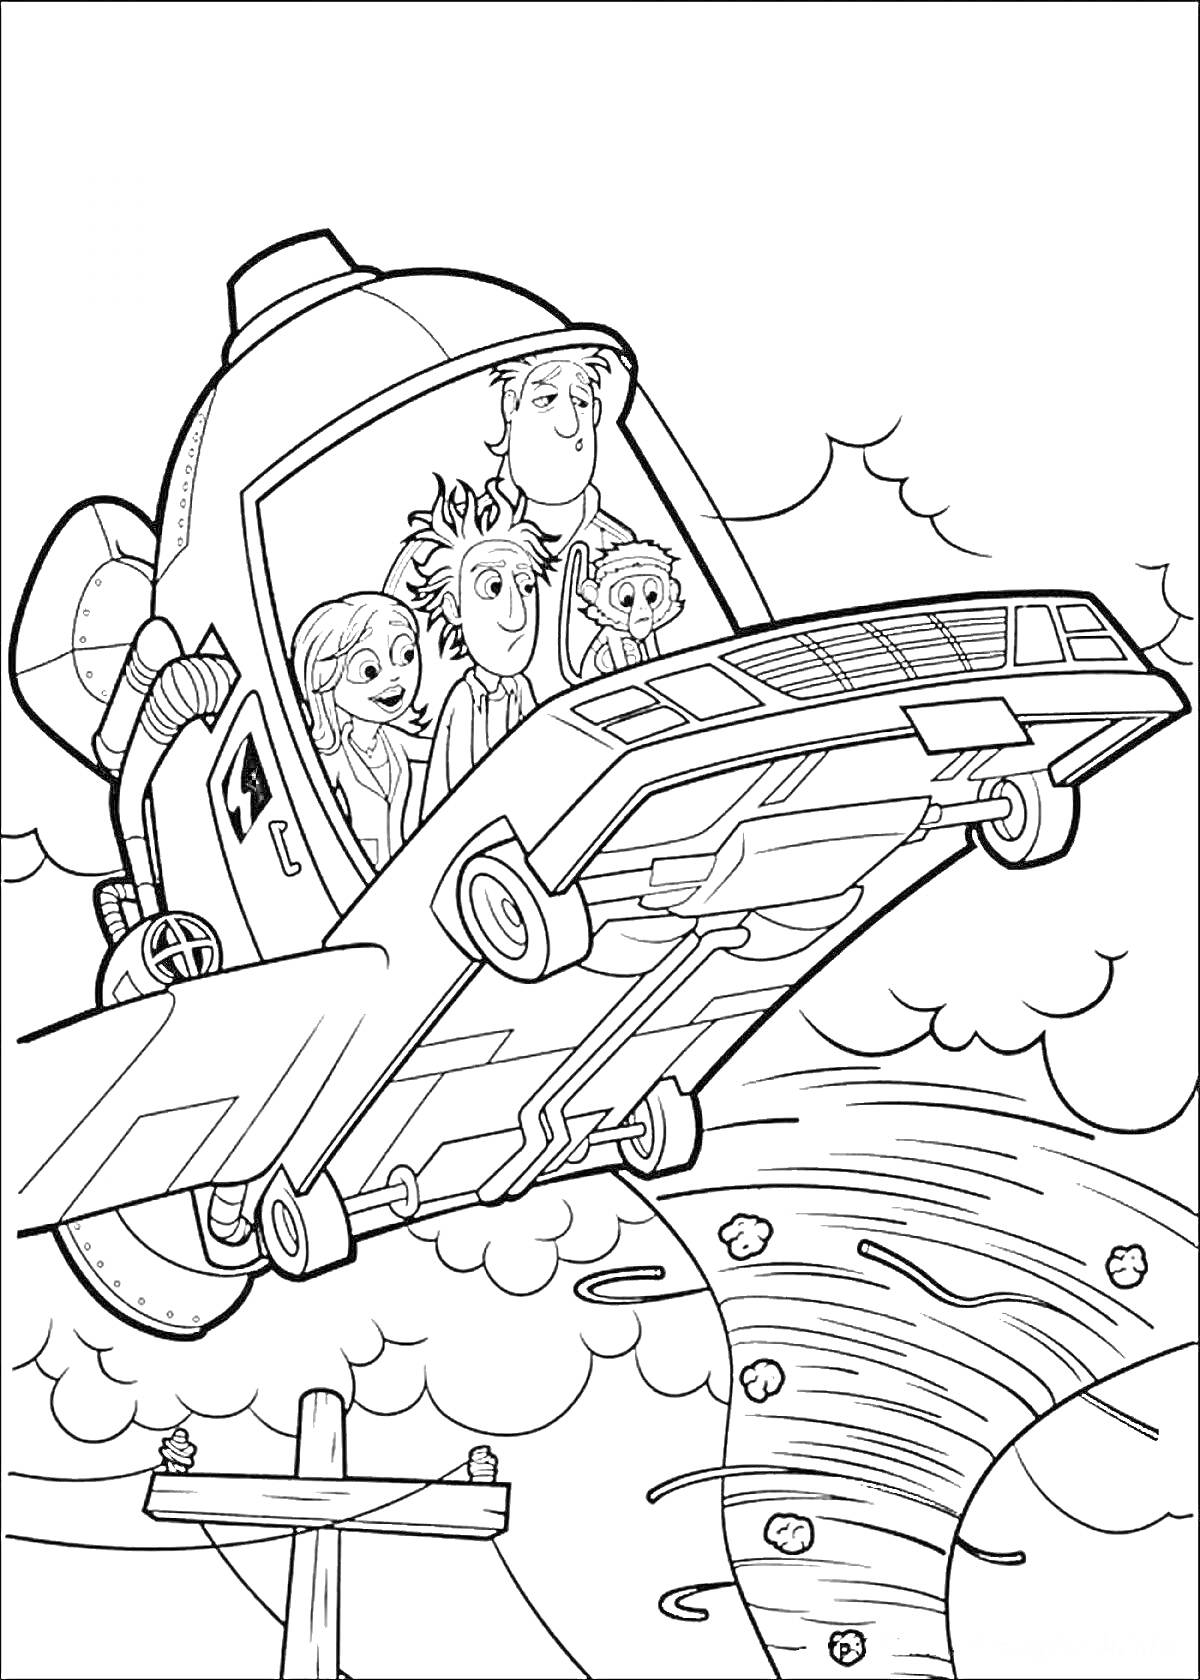 Летательный аппарат с четырьмя персонажами внутри, летящий над торнадо из фрикаделек, облаками и электрическим столбом.